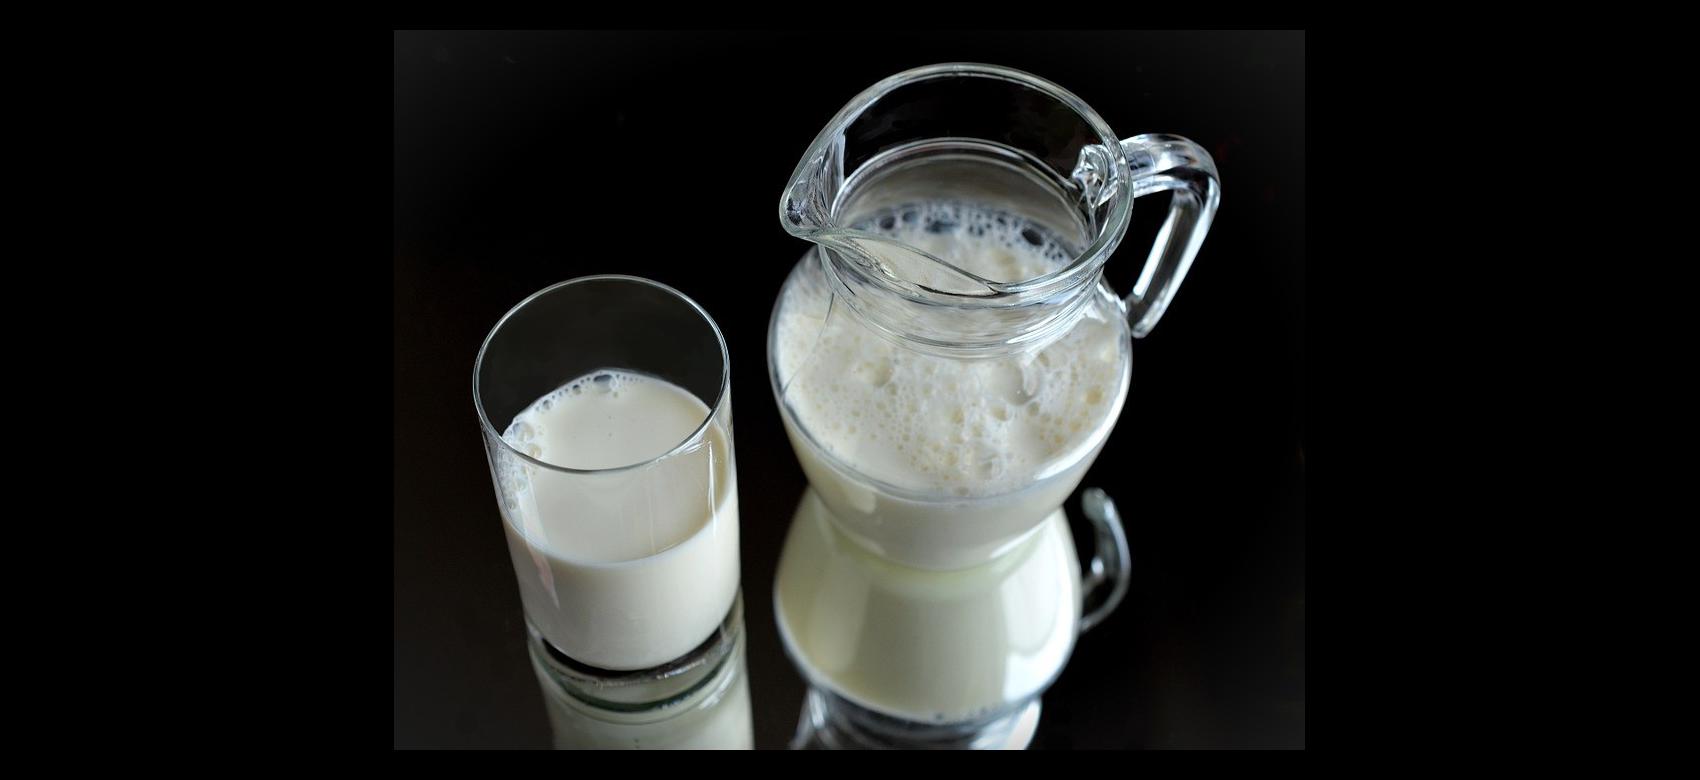 Vaso y jarra de leche